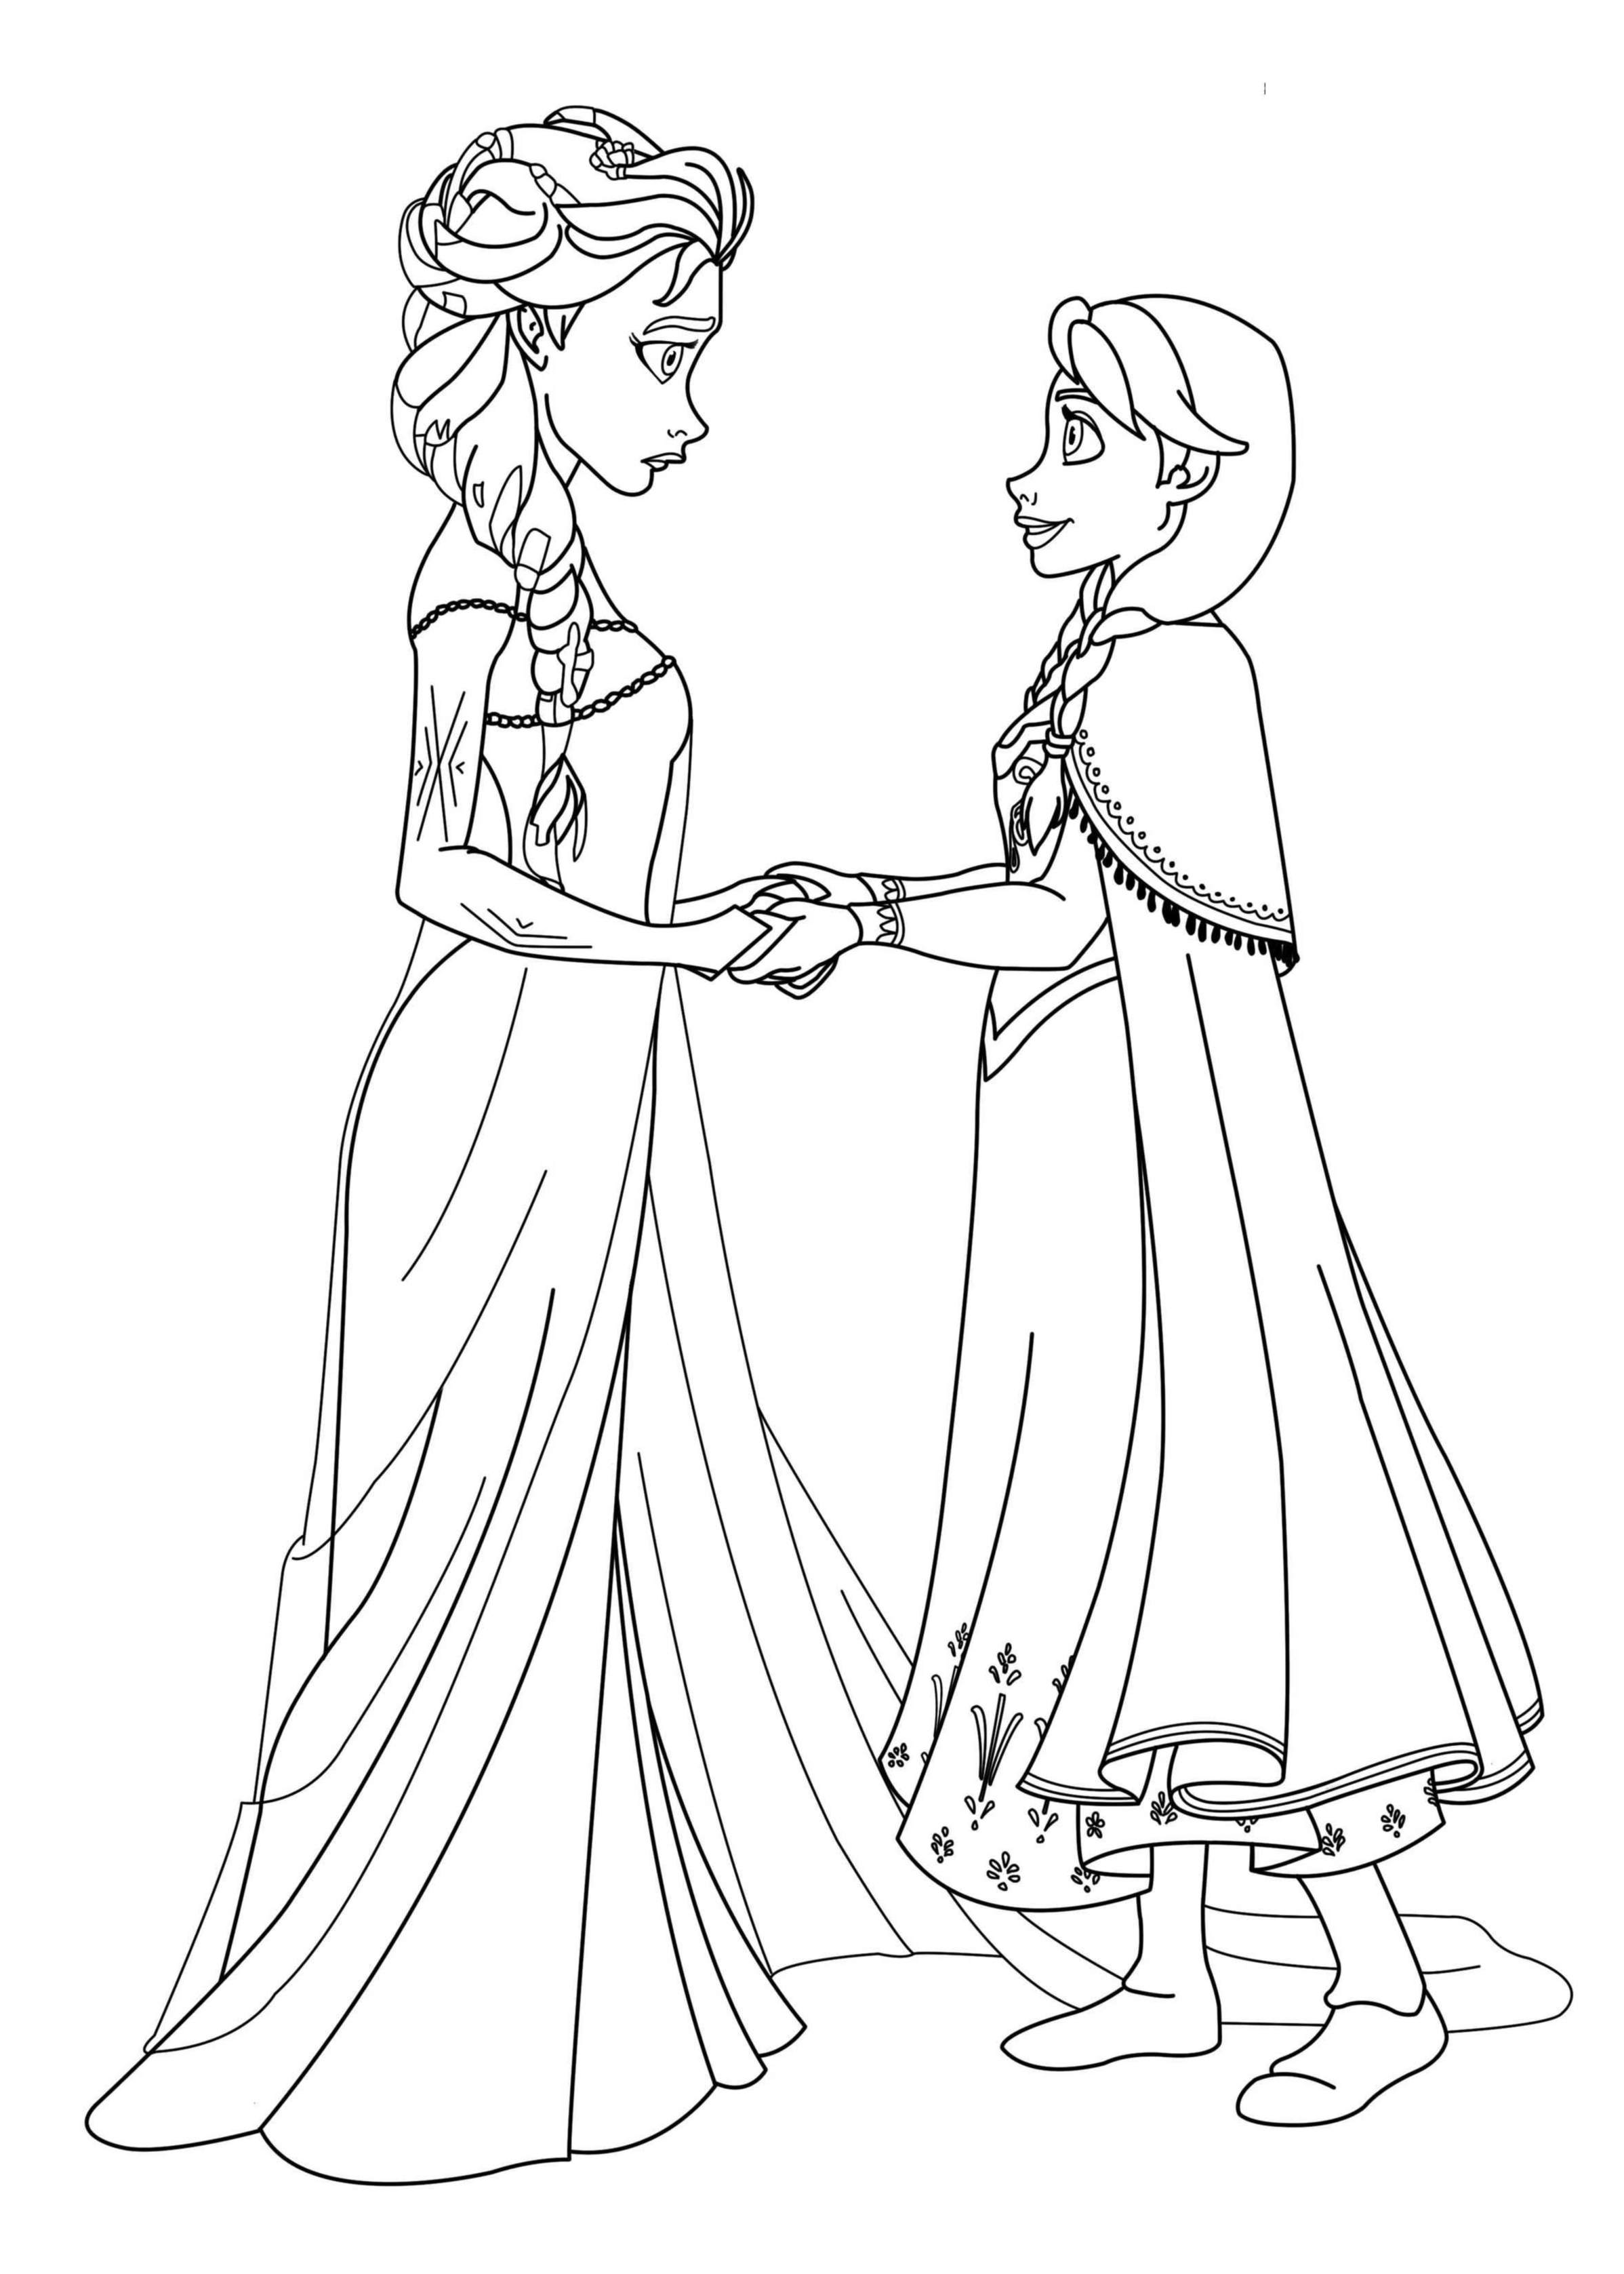 Anna et Elsa, les princesses de La reine des neiges de Disney